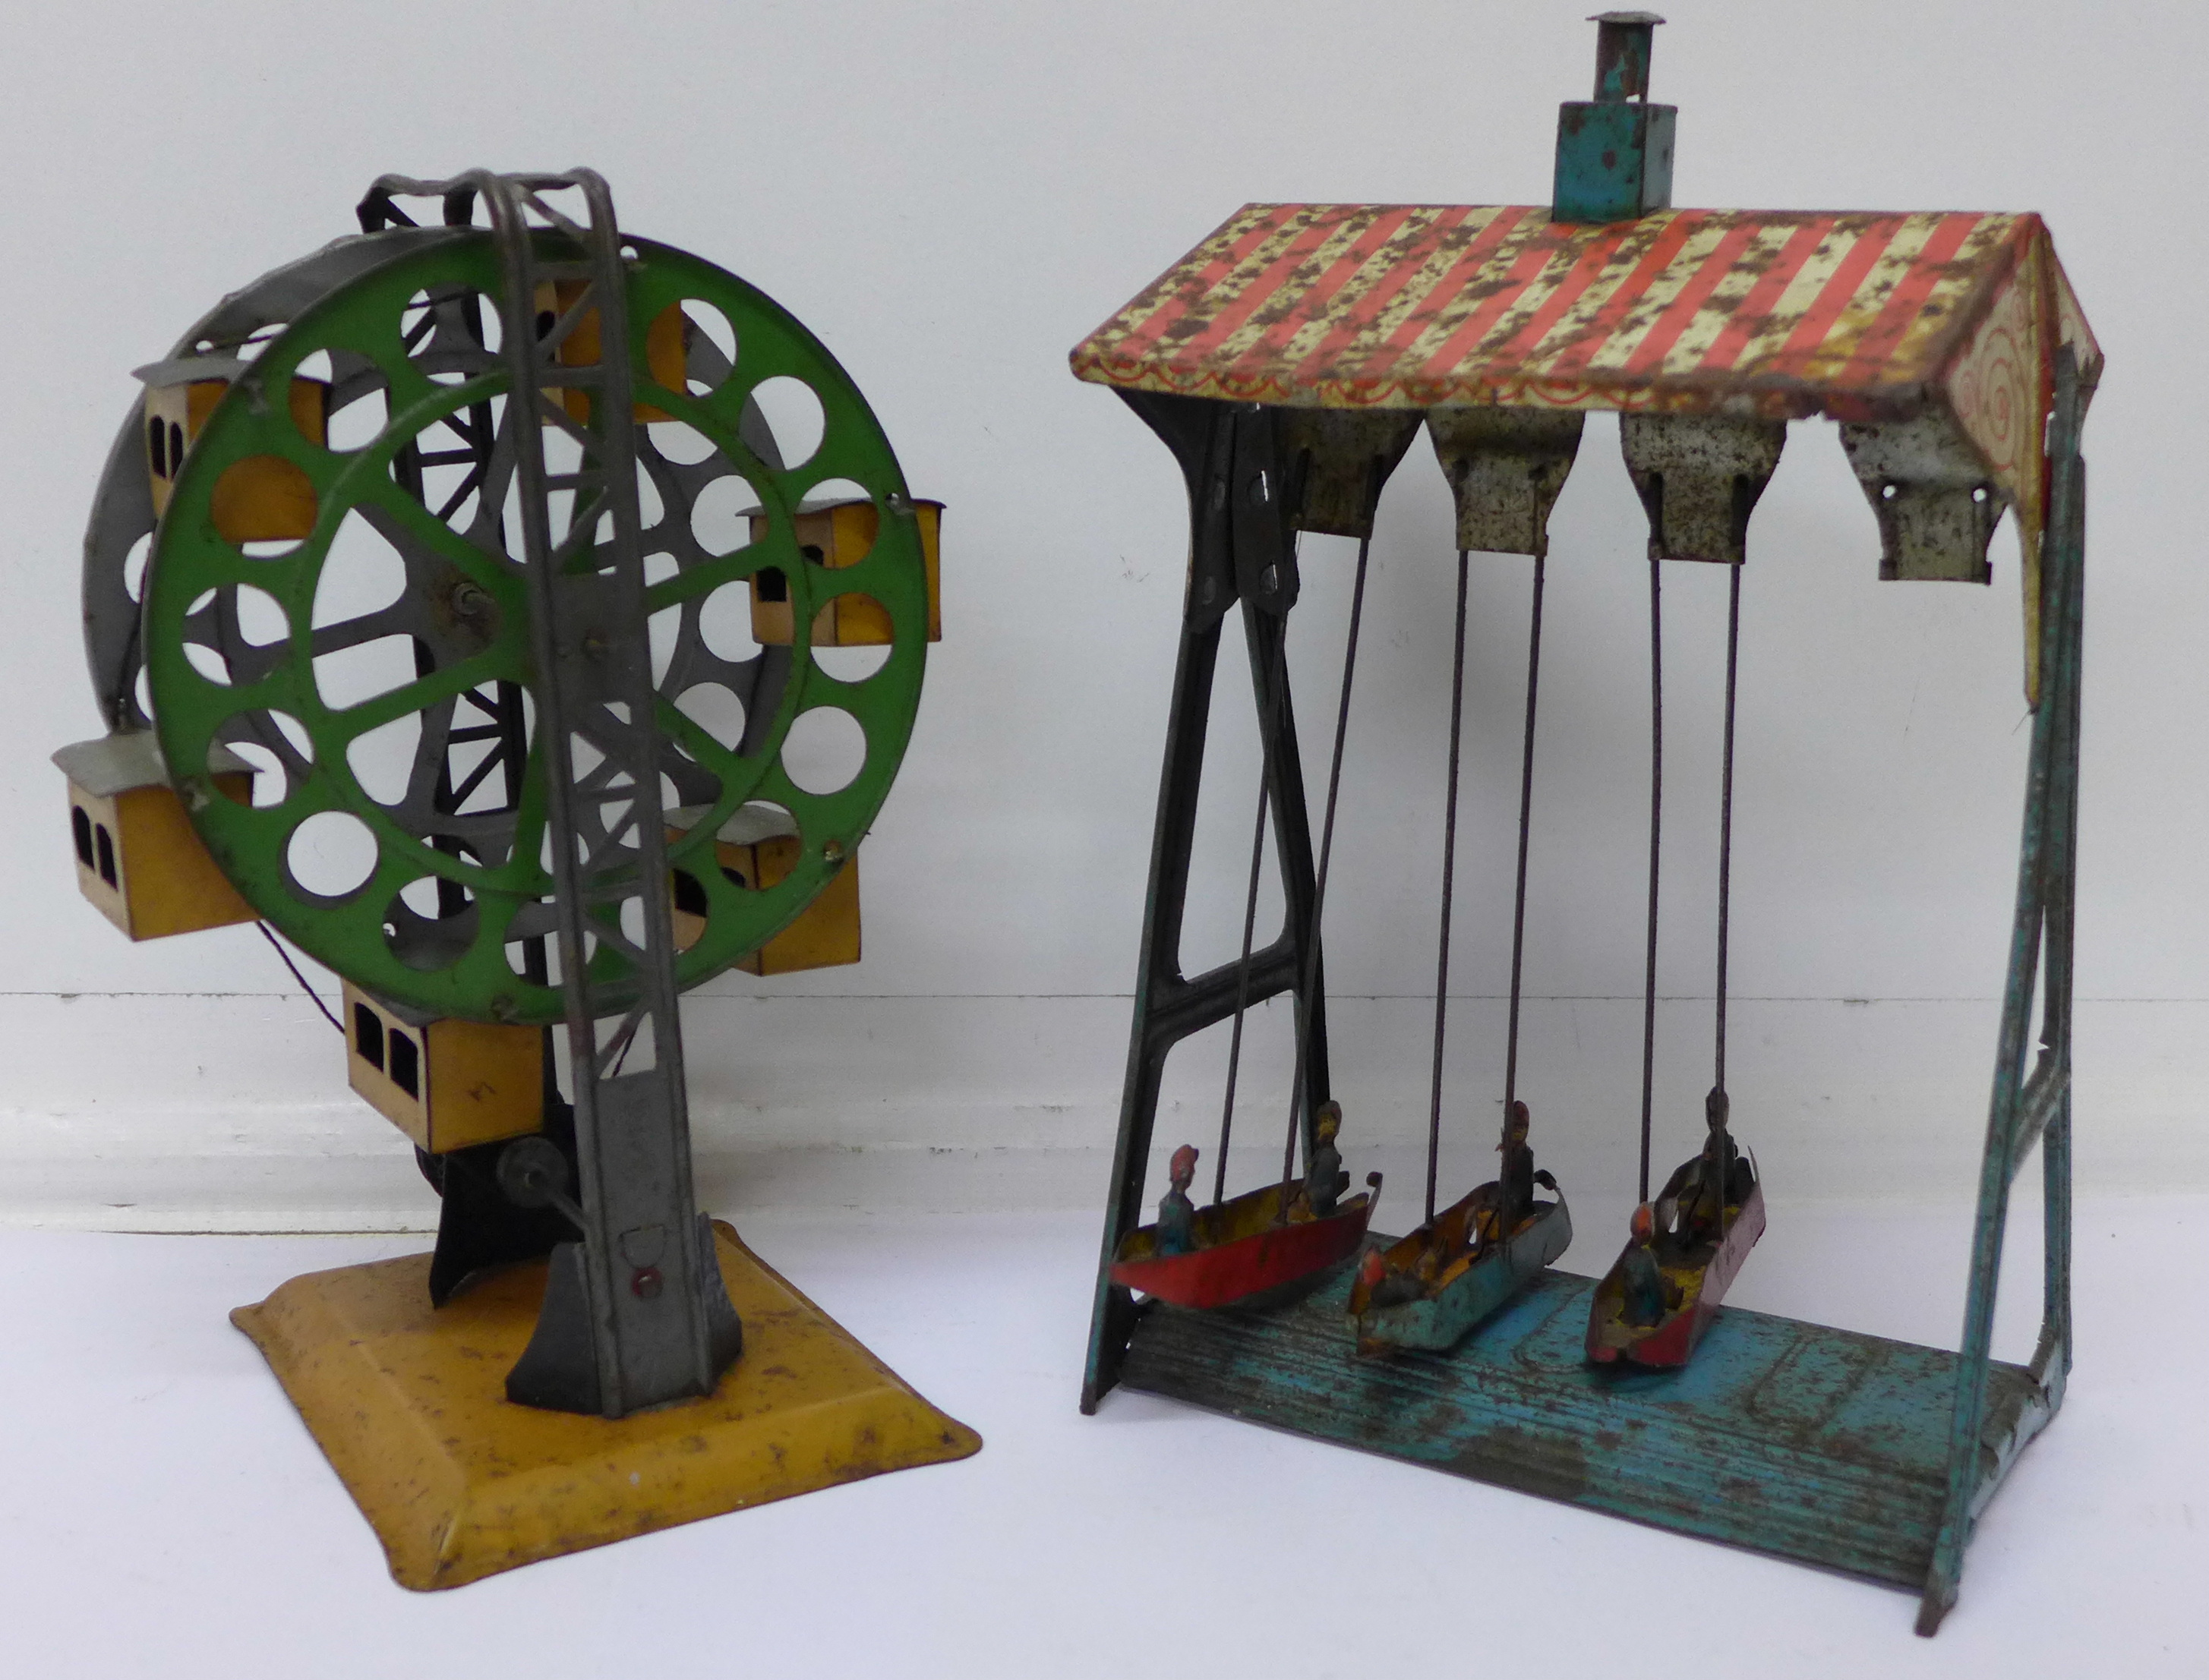 A pre-war German tin plate ferris wheel and a German fairground ride,